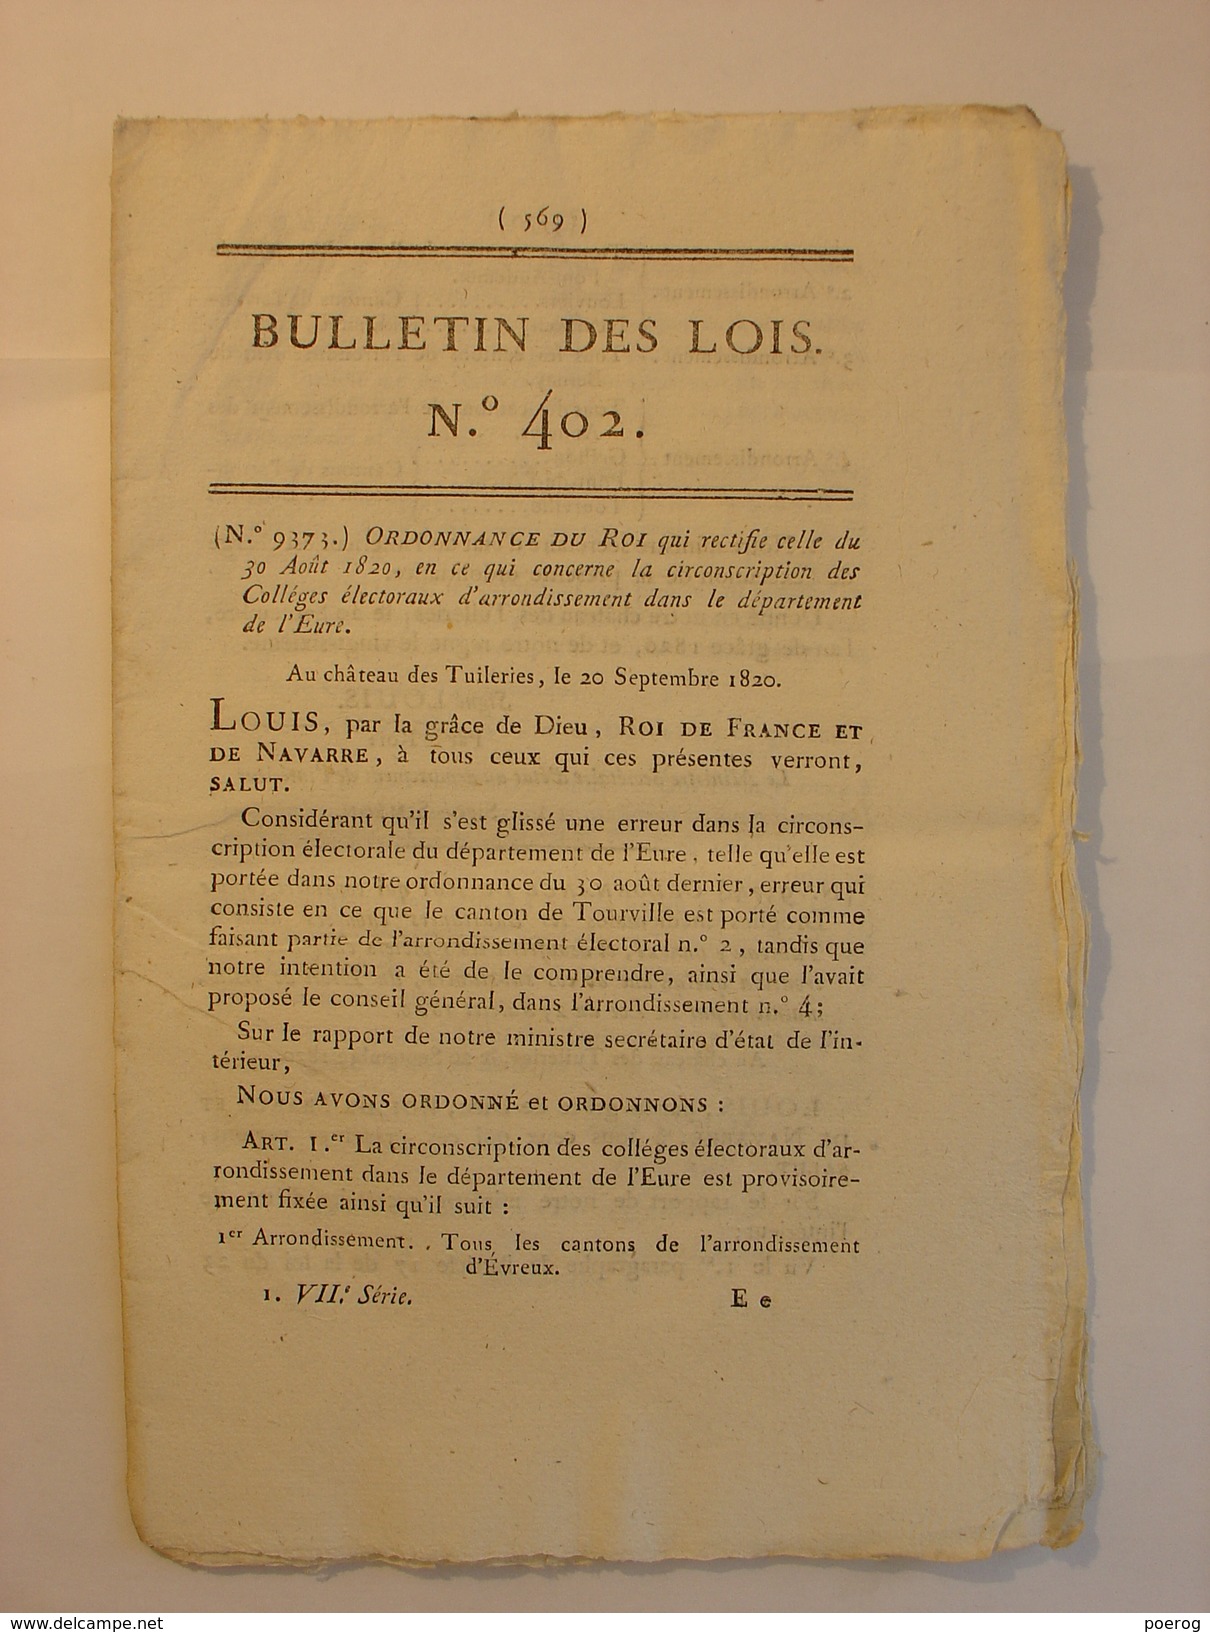 BULLETIN DES LOIS De 1820 - MEDECINE MEDICAMENT LISTE DROGUES MEDICINALES - ARCHEVEQUES BOURGES TOULOUSE EVEQUE SOISSONS - Gesetze & Erlasse